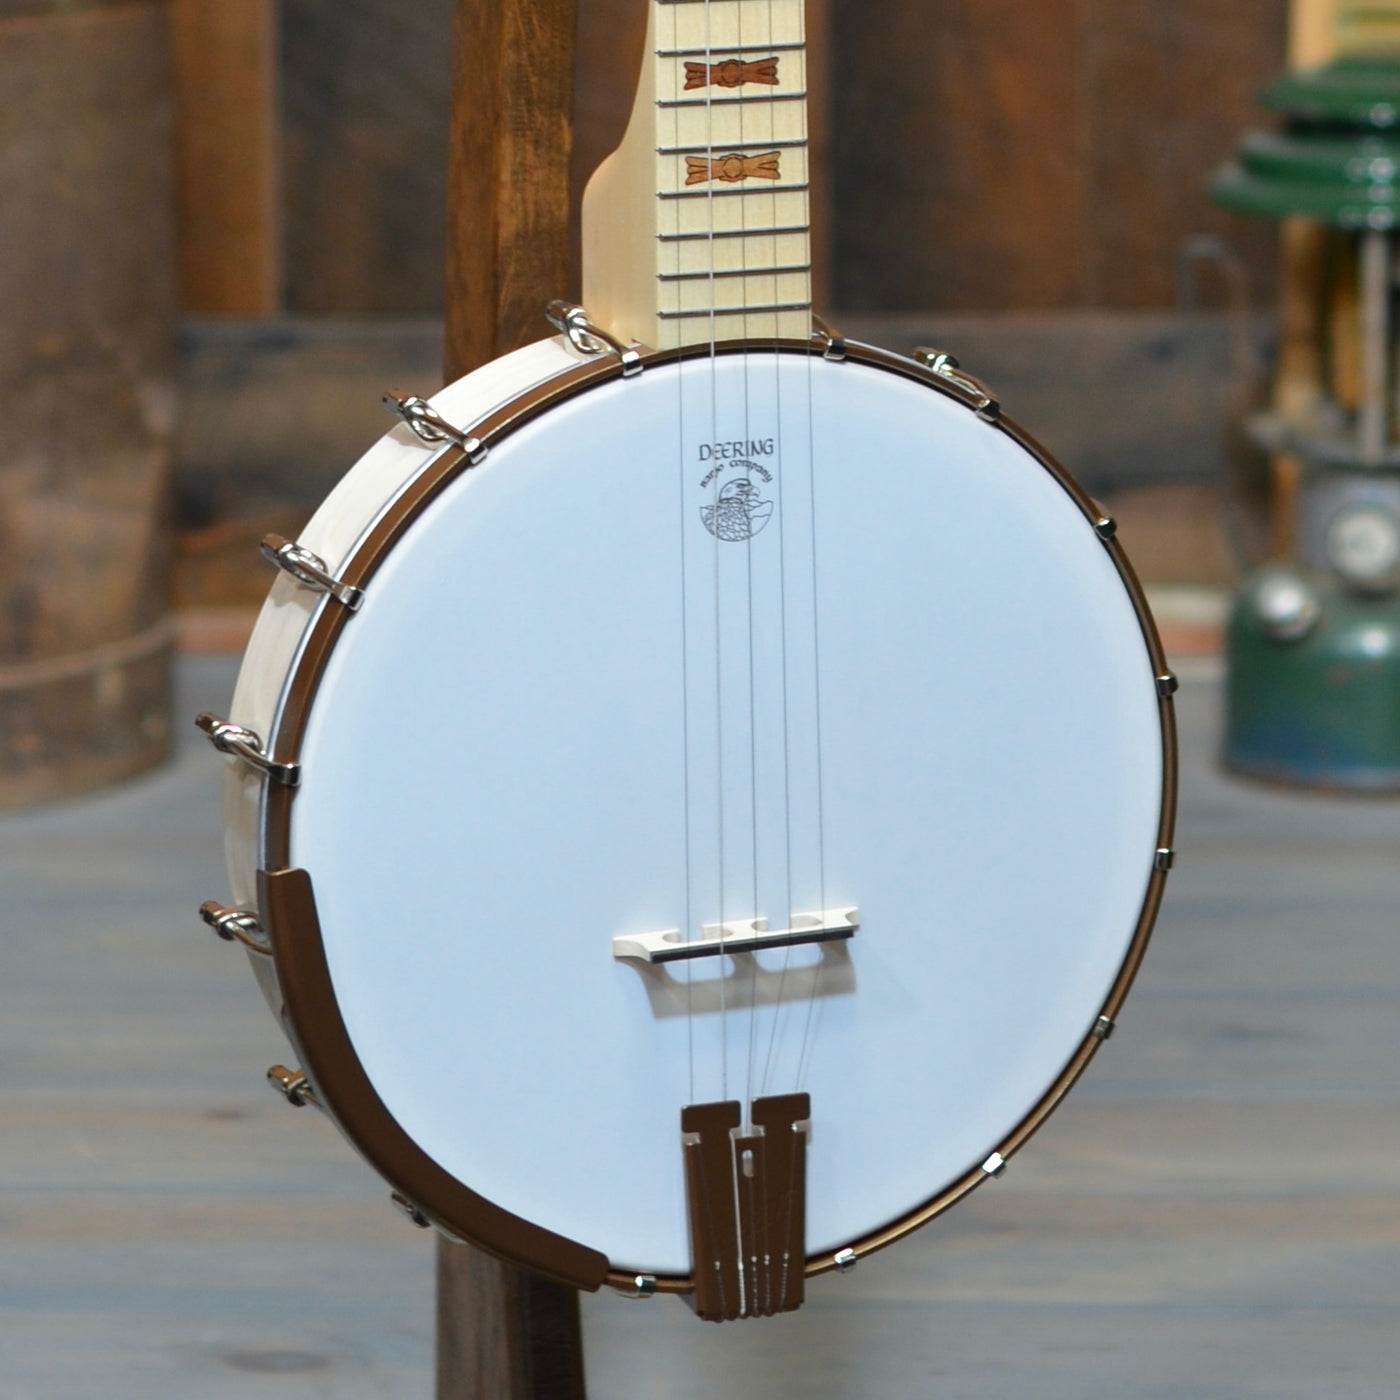 Goodtime Six 6-String Banjo